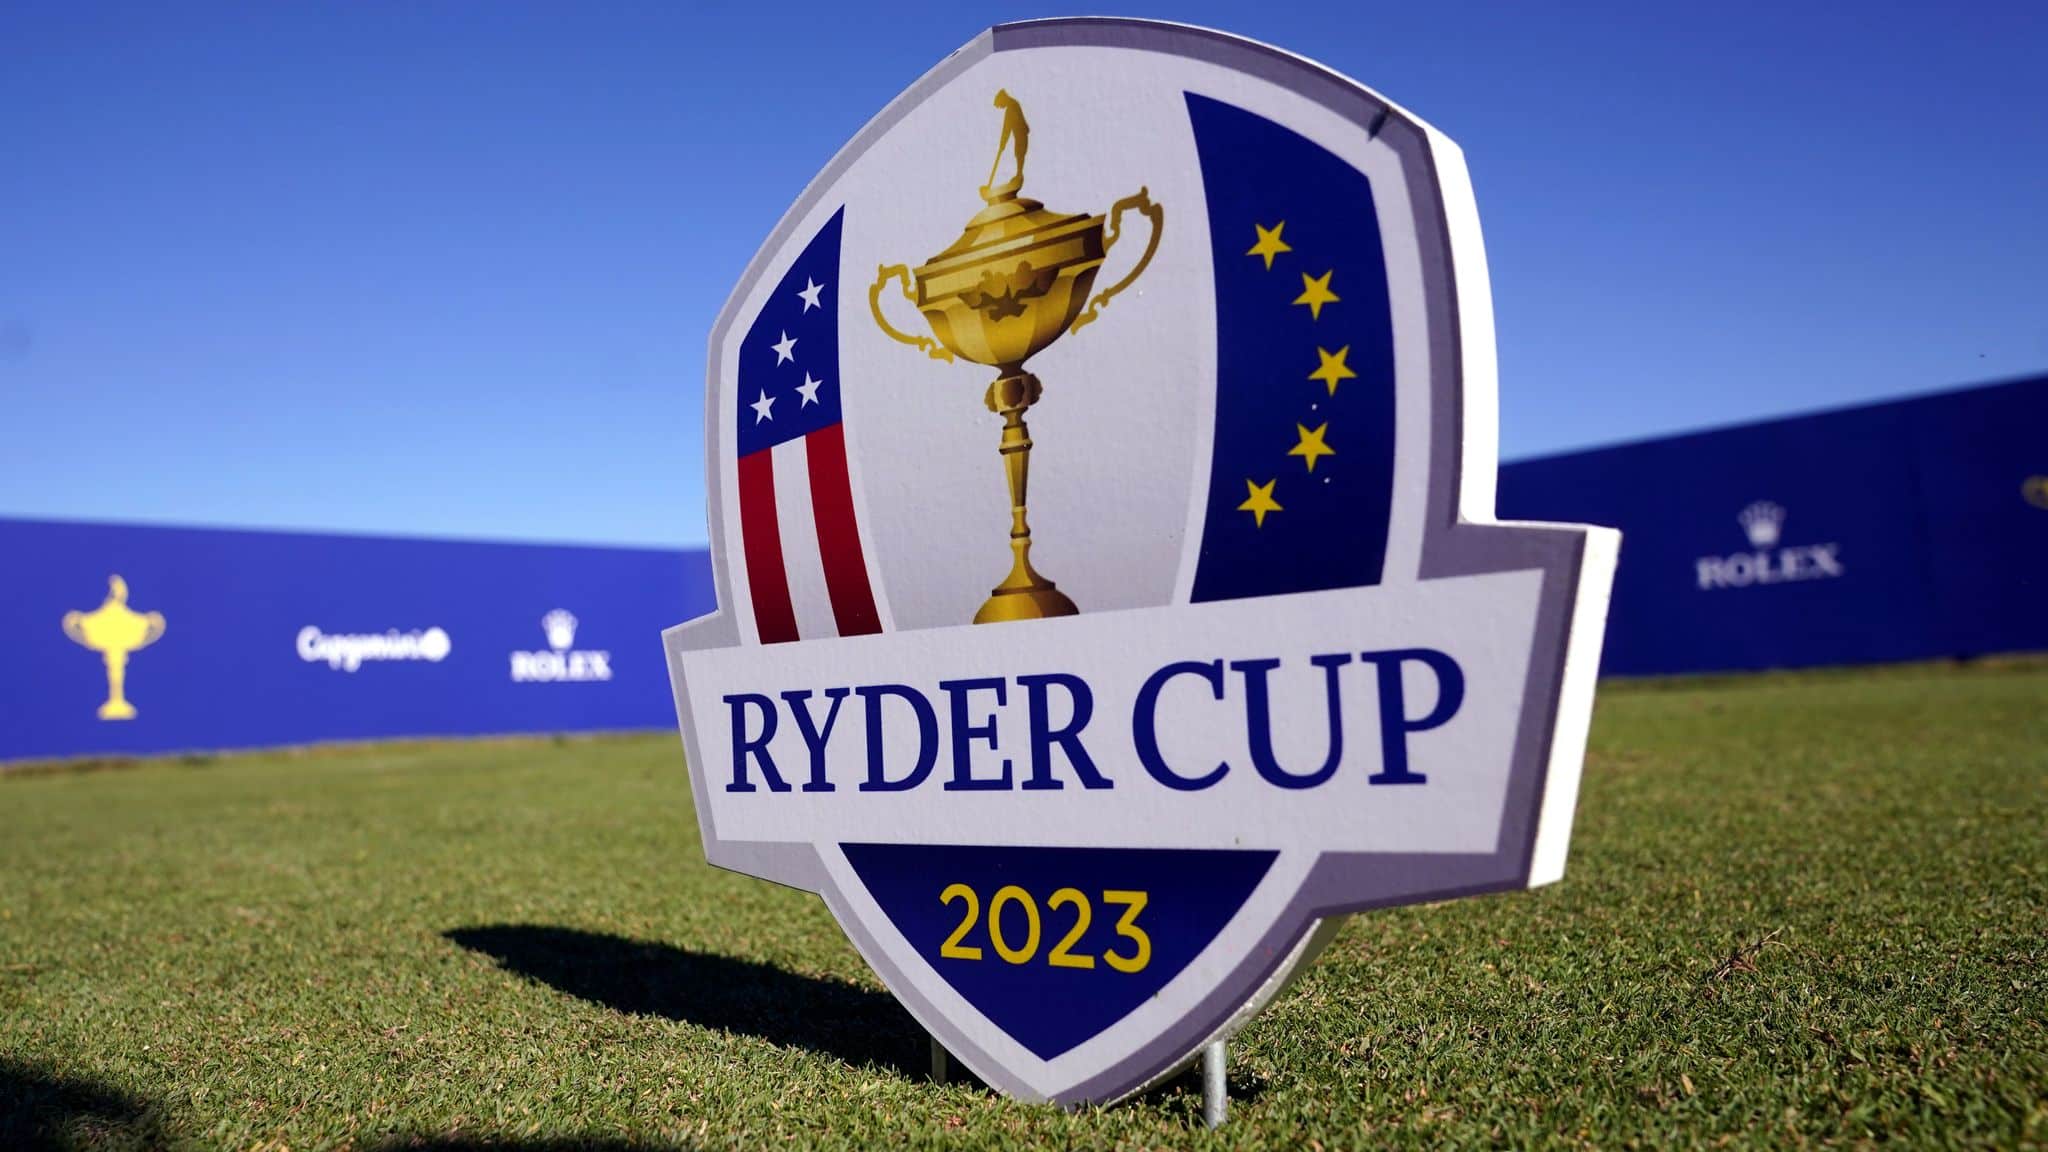 Ryder Cup 2023 spilles i dejlige Rom. Få sidste nyt om Ryder Cup og den bane nær Rom, der lægger græs til den gigantiske golf event. Tee-off!